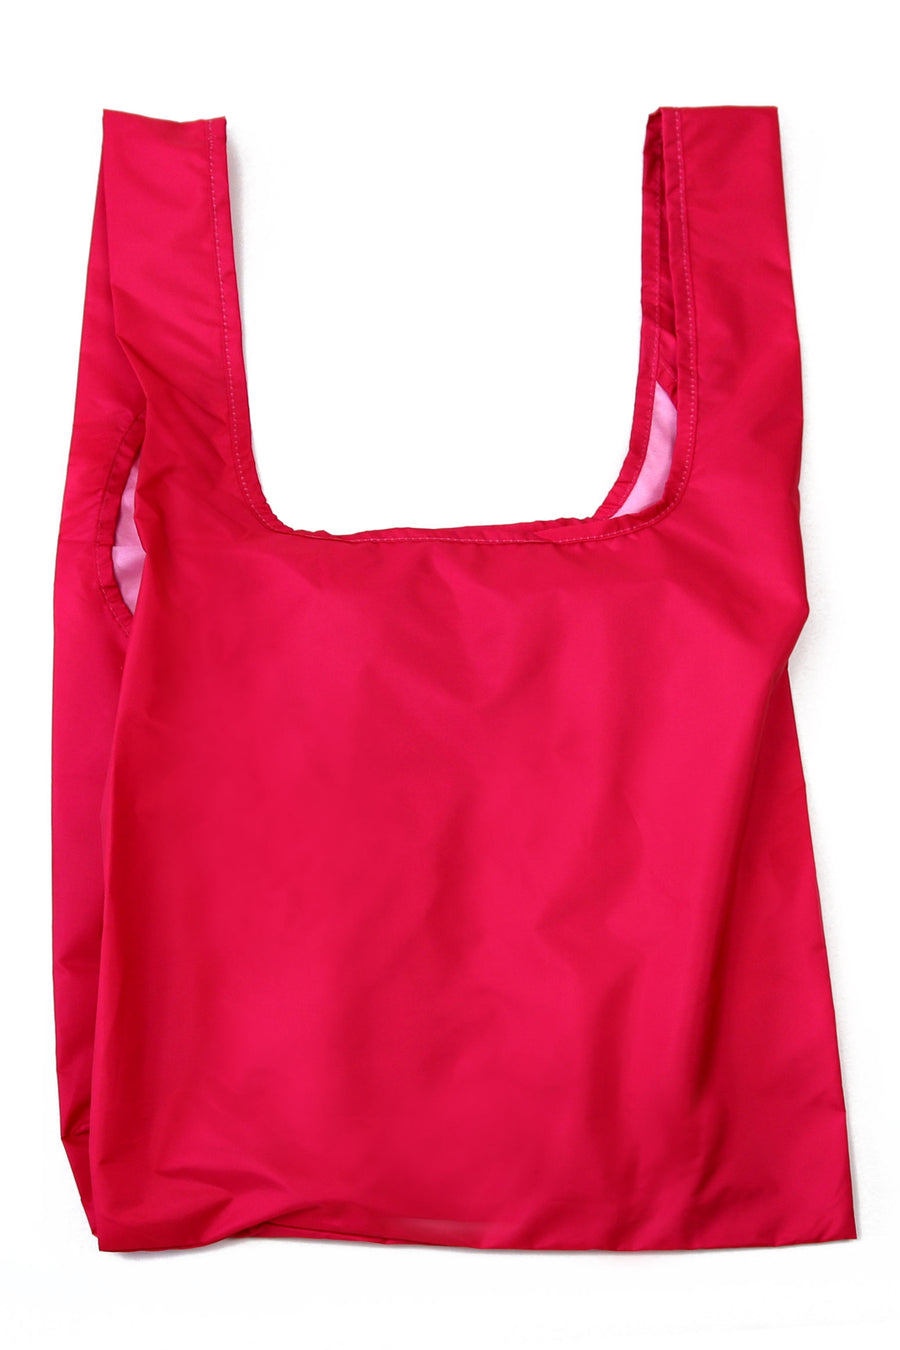 Kind Bag Berry Pink Reusable Bag